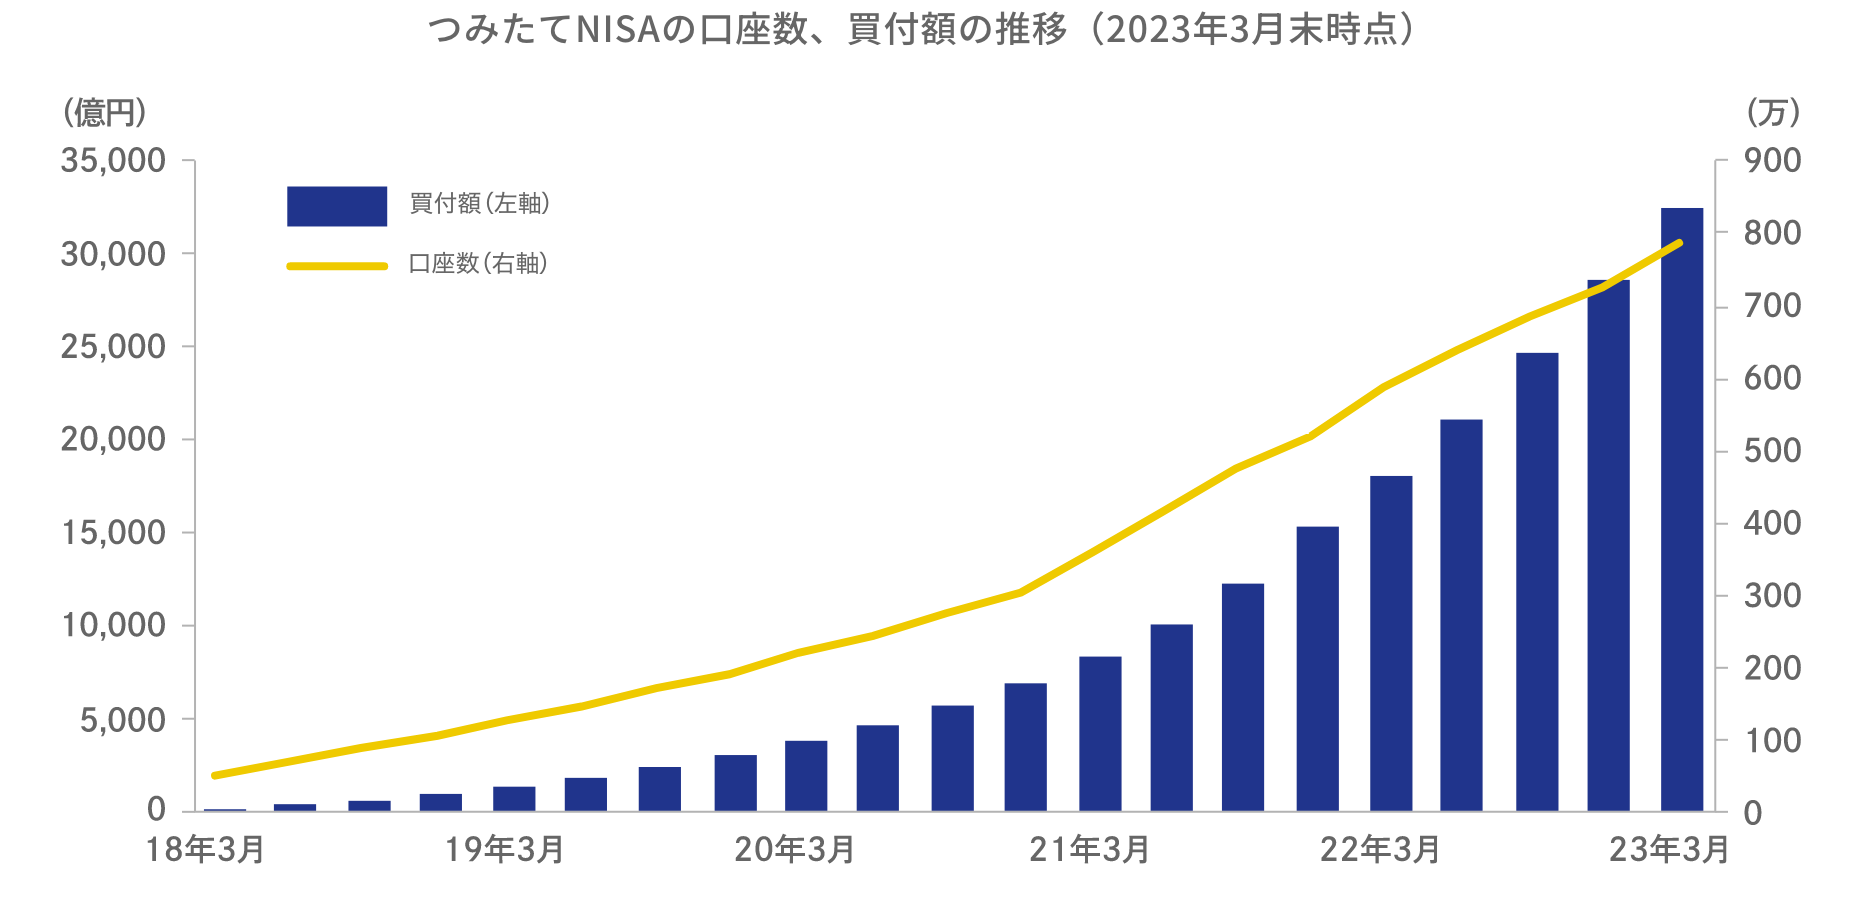 つみたてNISAの口座数、買付額の推移（2023年3月末時点）